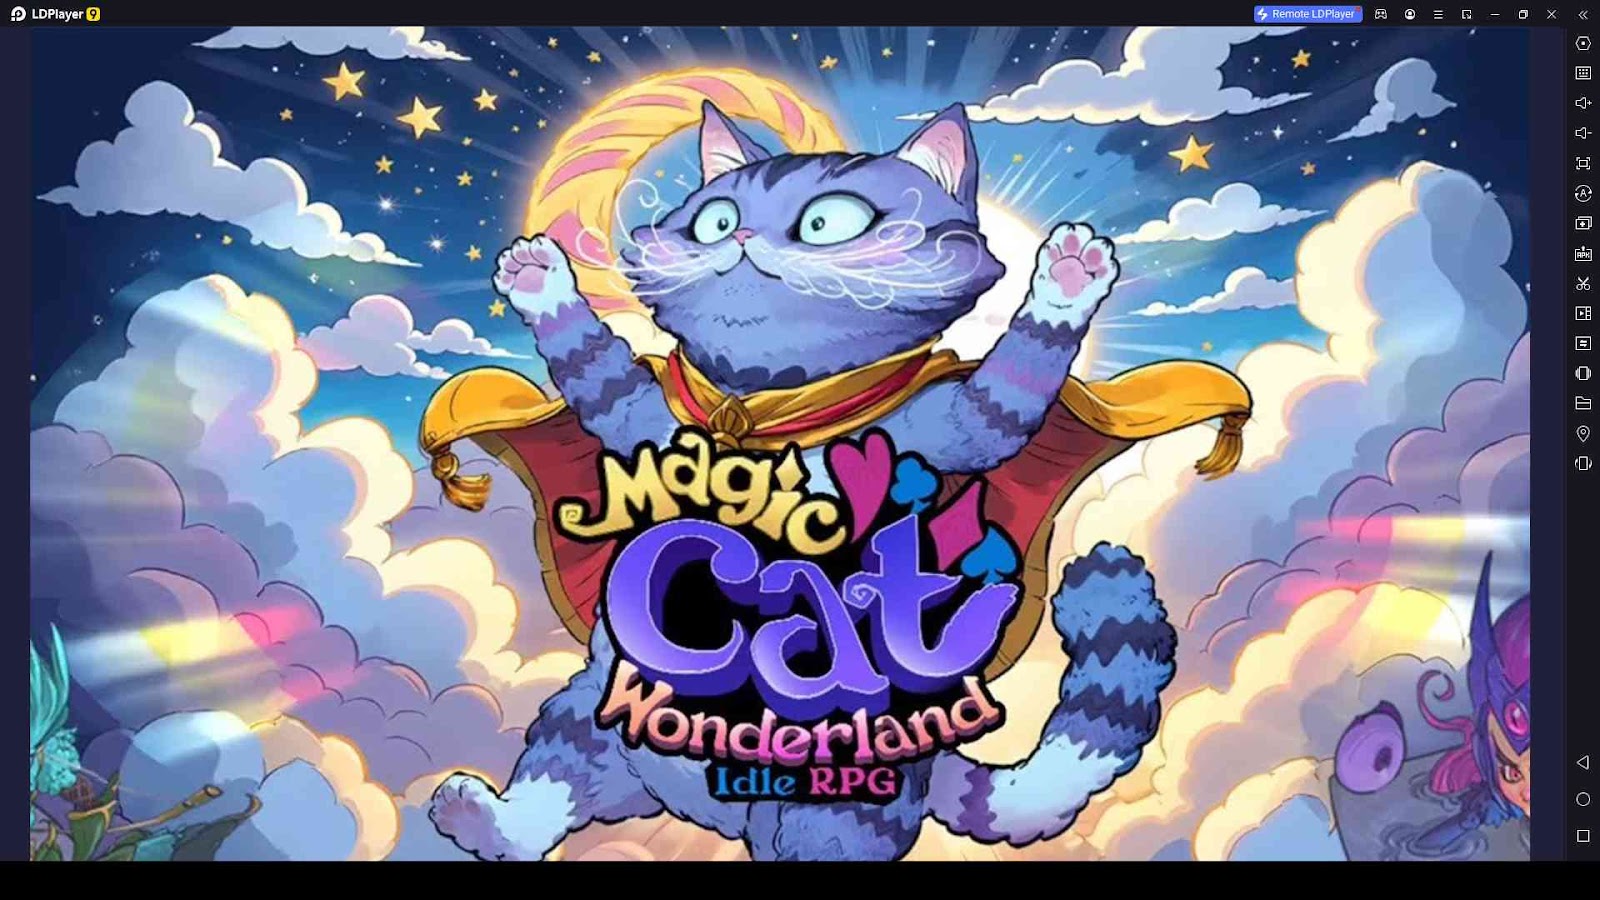 Magic Cat Wonderland: Idle RPG Codes